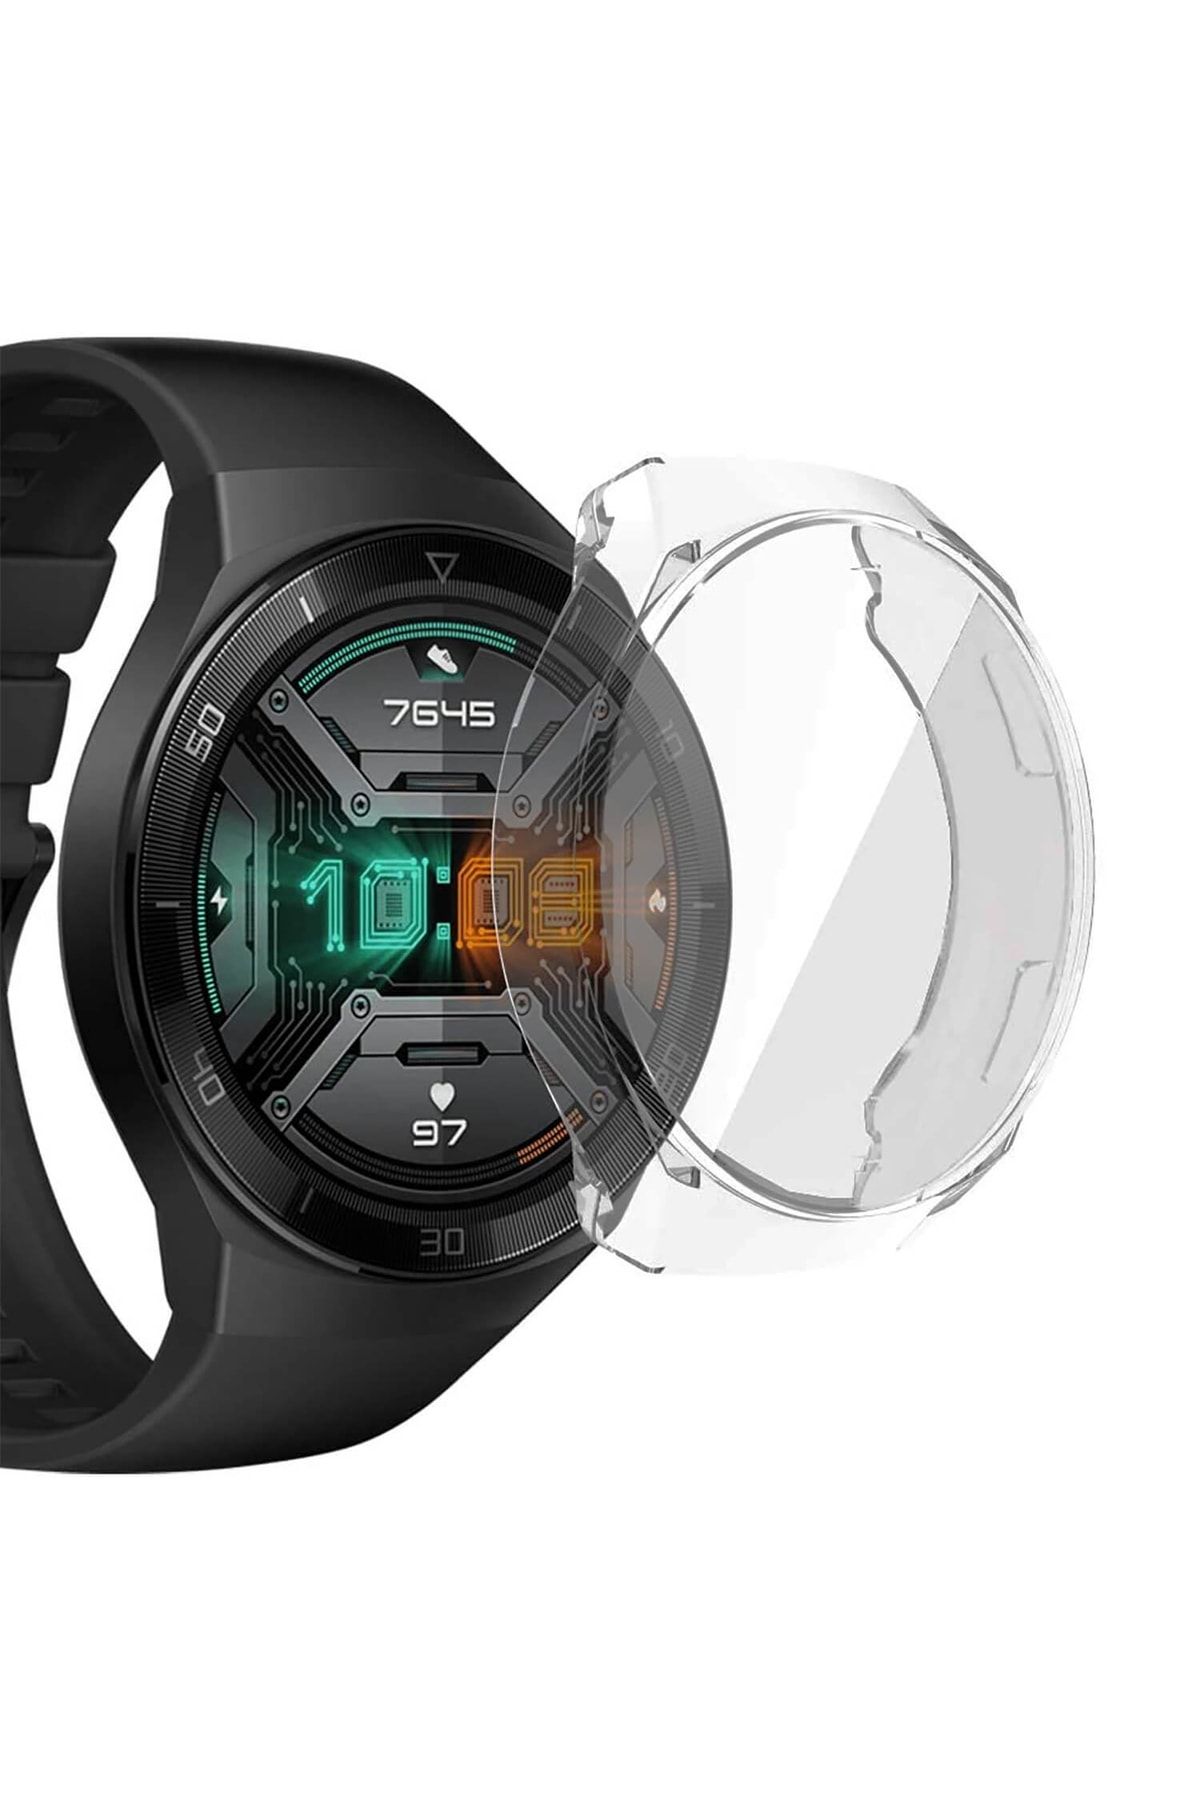 Microsonic Huawei Watch Gt 2e Kılıf 360 Full Round Soft Silicone Şeffaf   Uyumlu